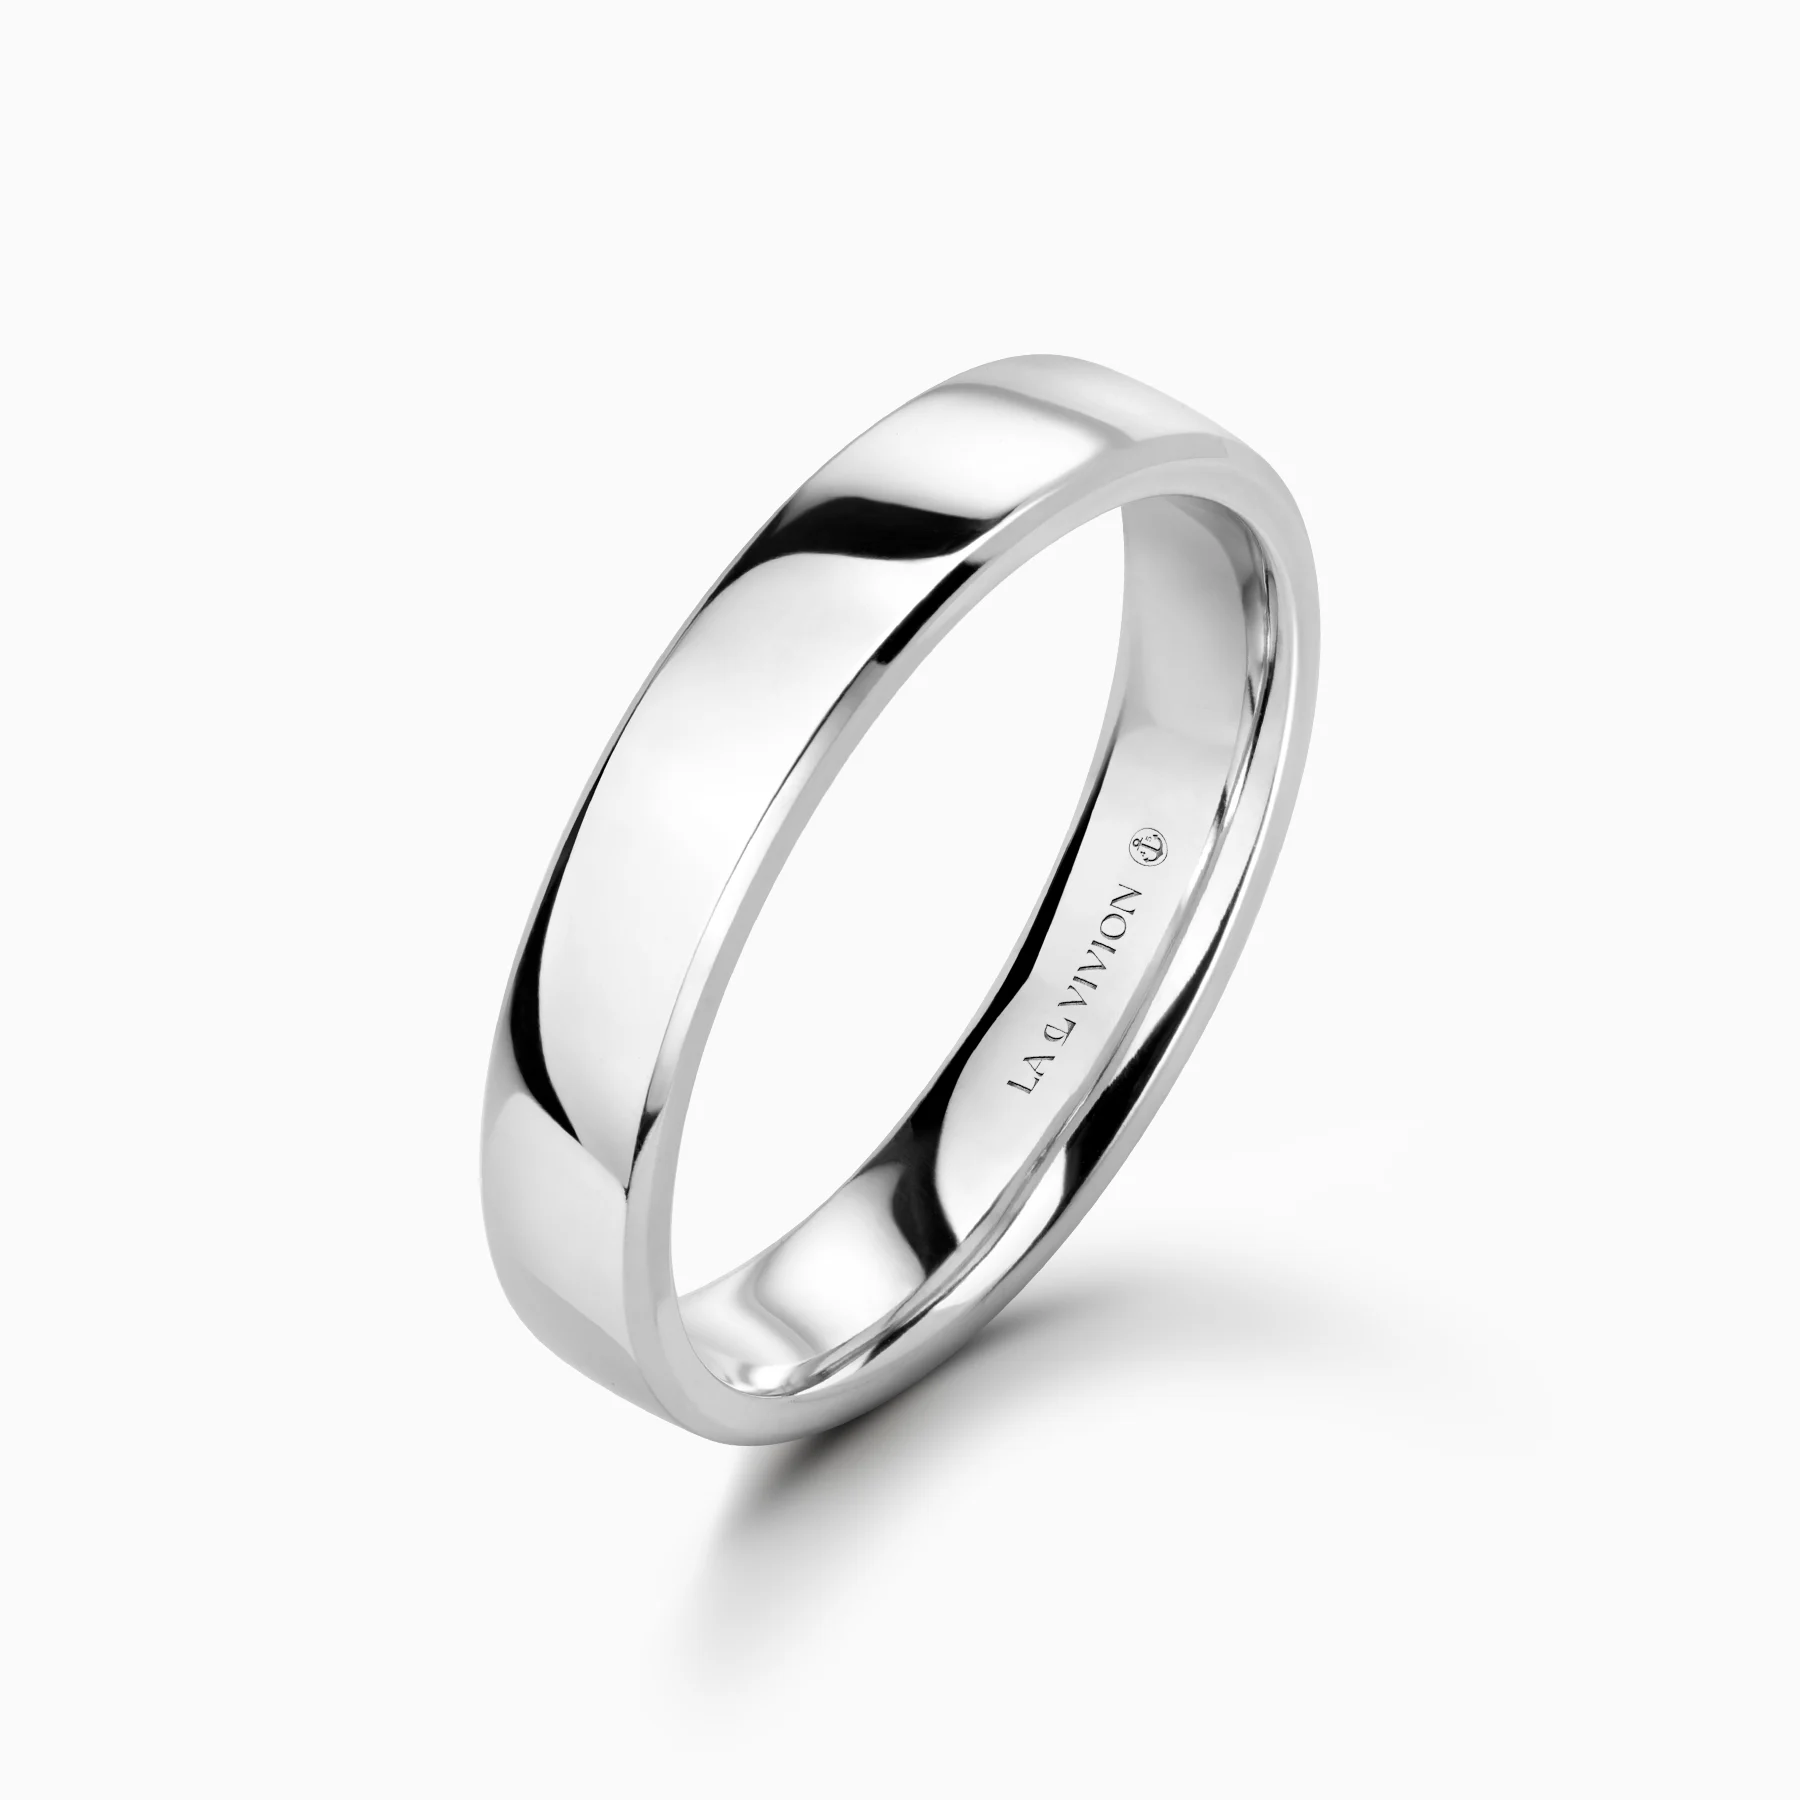 Обручальное кольцо Unité 4 mm (Единство)